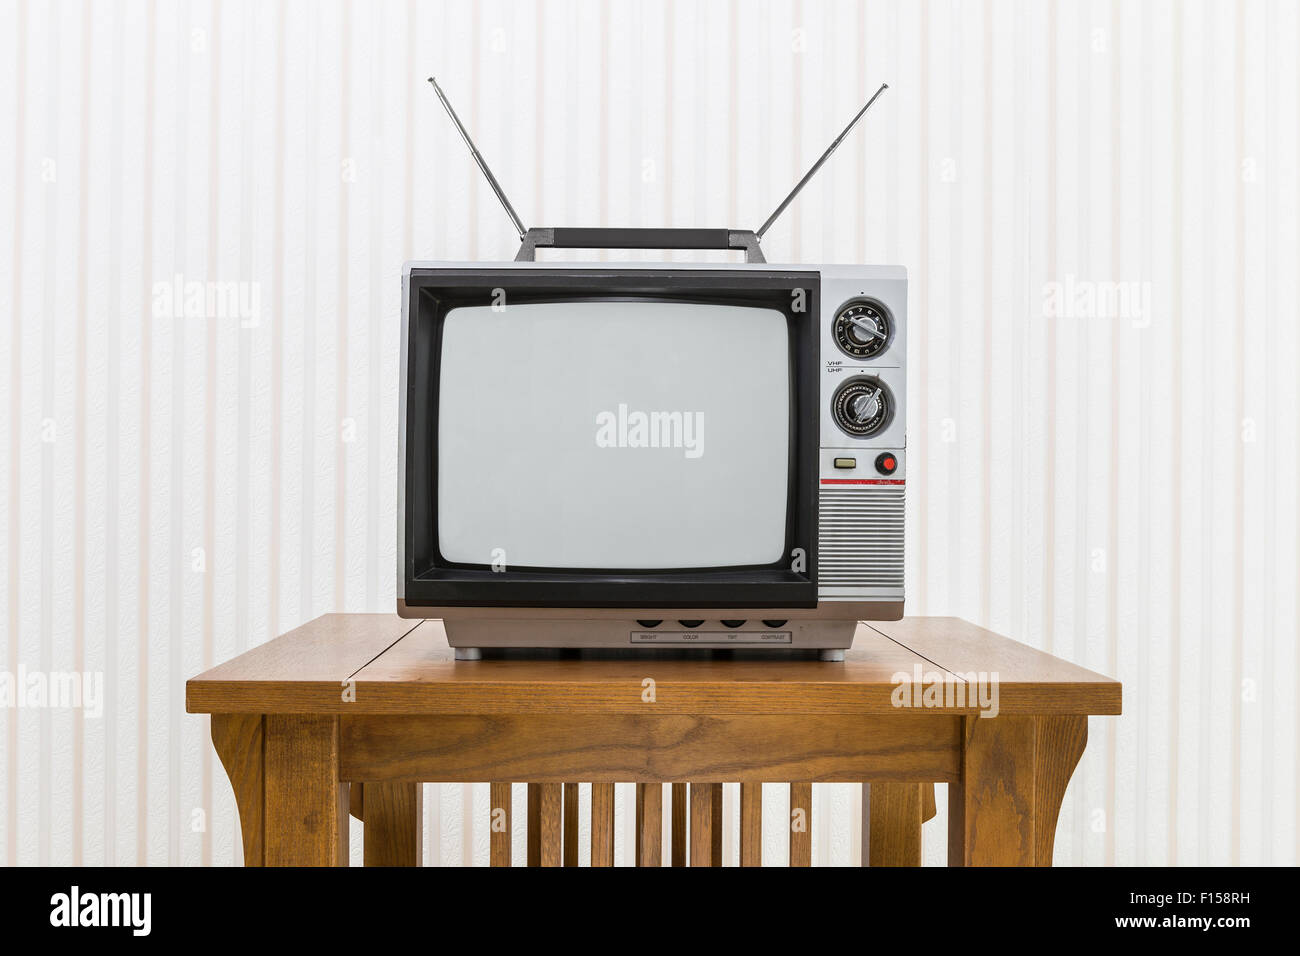 Vieille télévision portative avec antenne sur table en bois. Banque D'Images